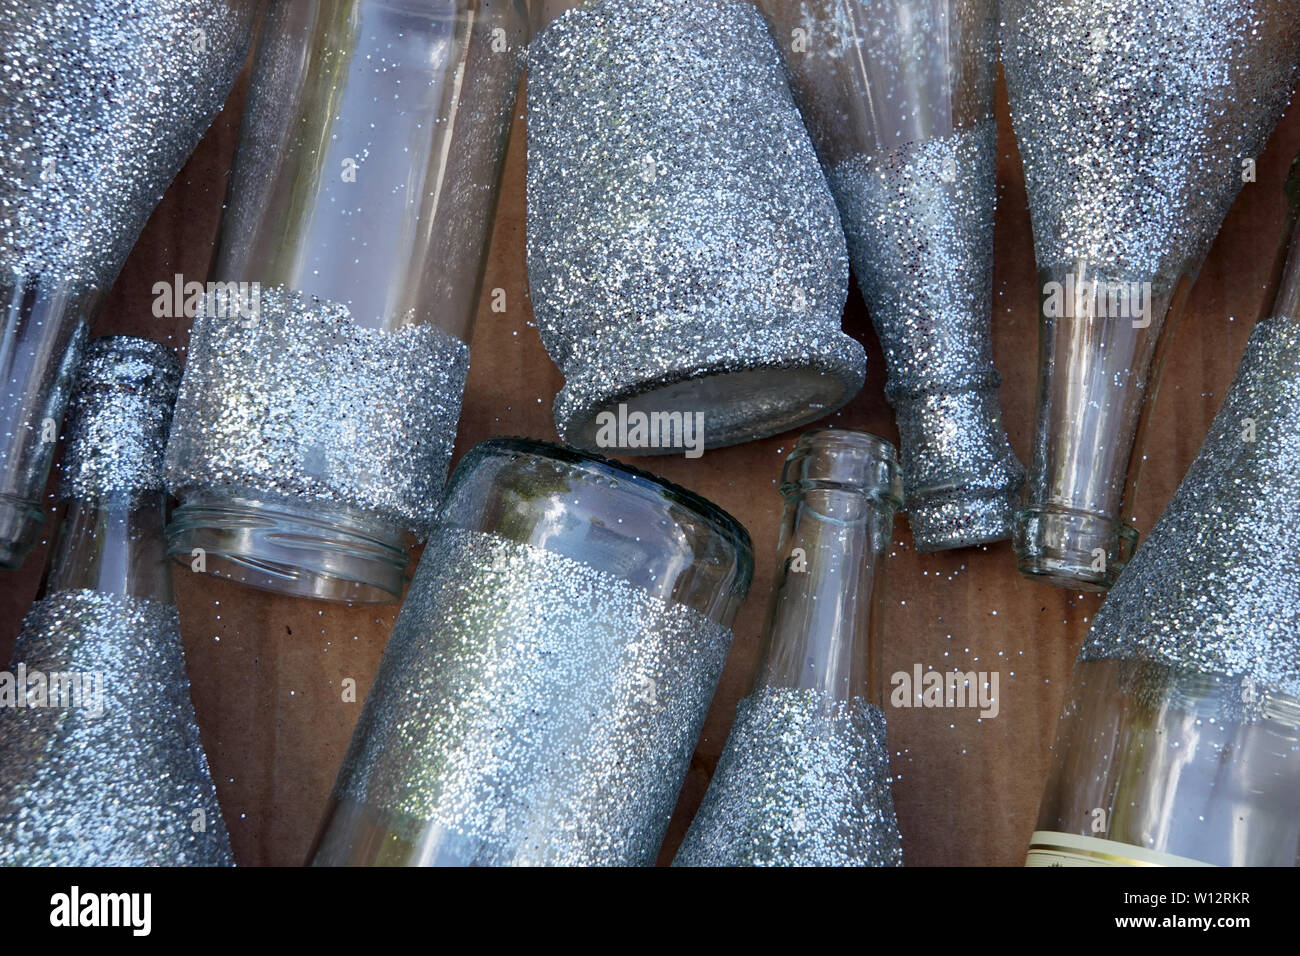 silbern lackierte Flaschen und Gläser als Dekoration Stock Photo